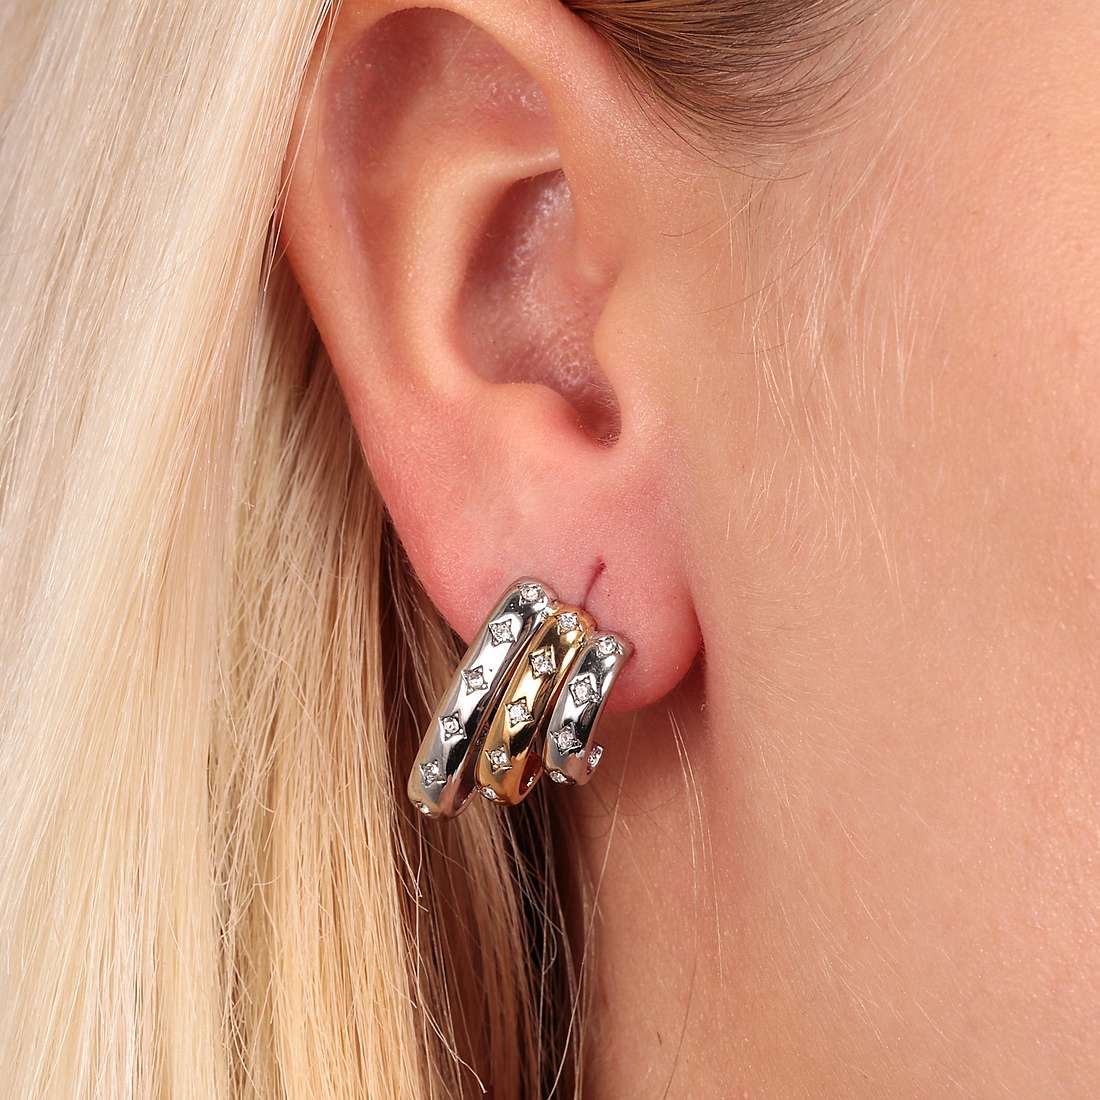 Morellato earrings Cerchi woman SAKM78 wearing